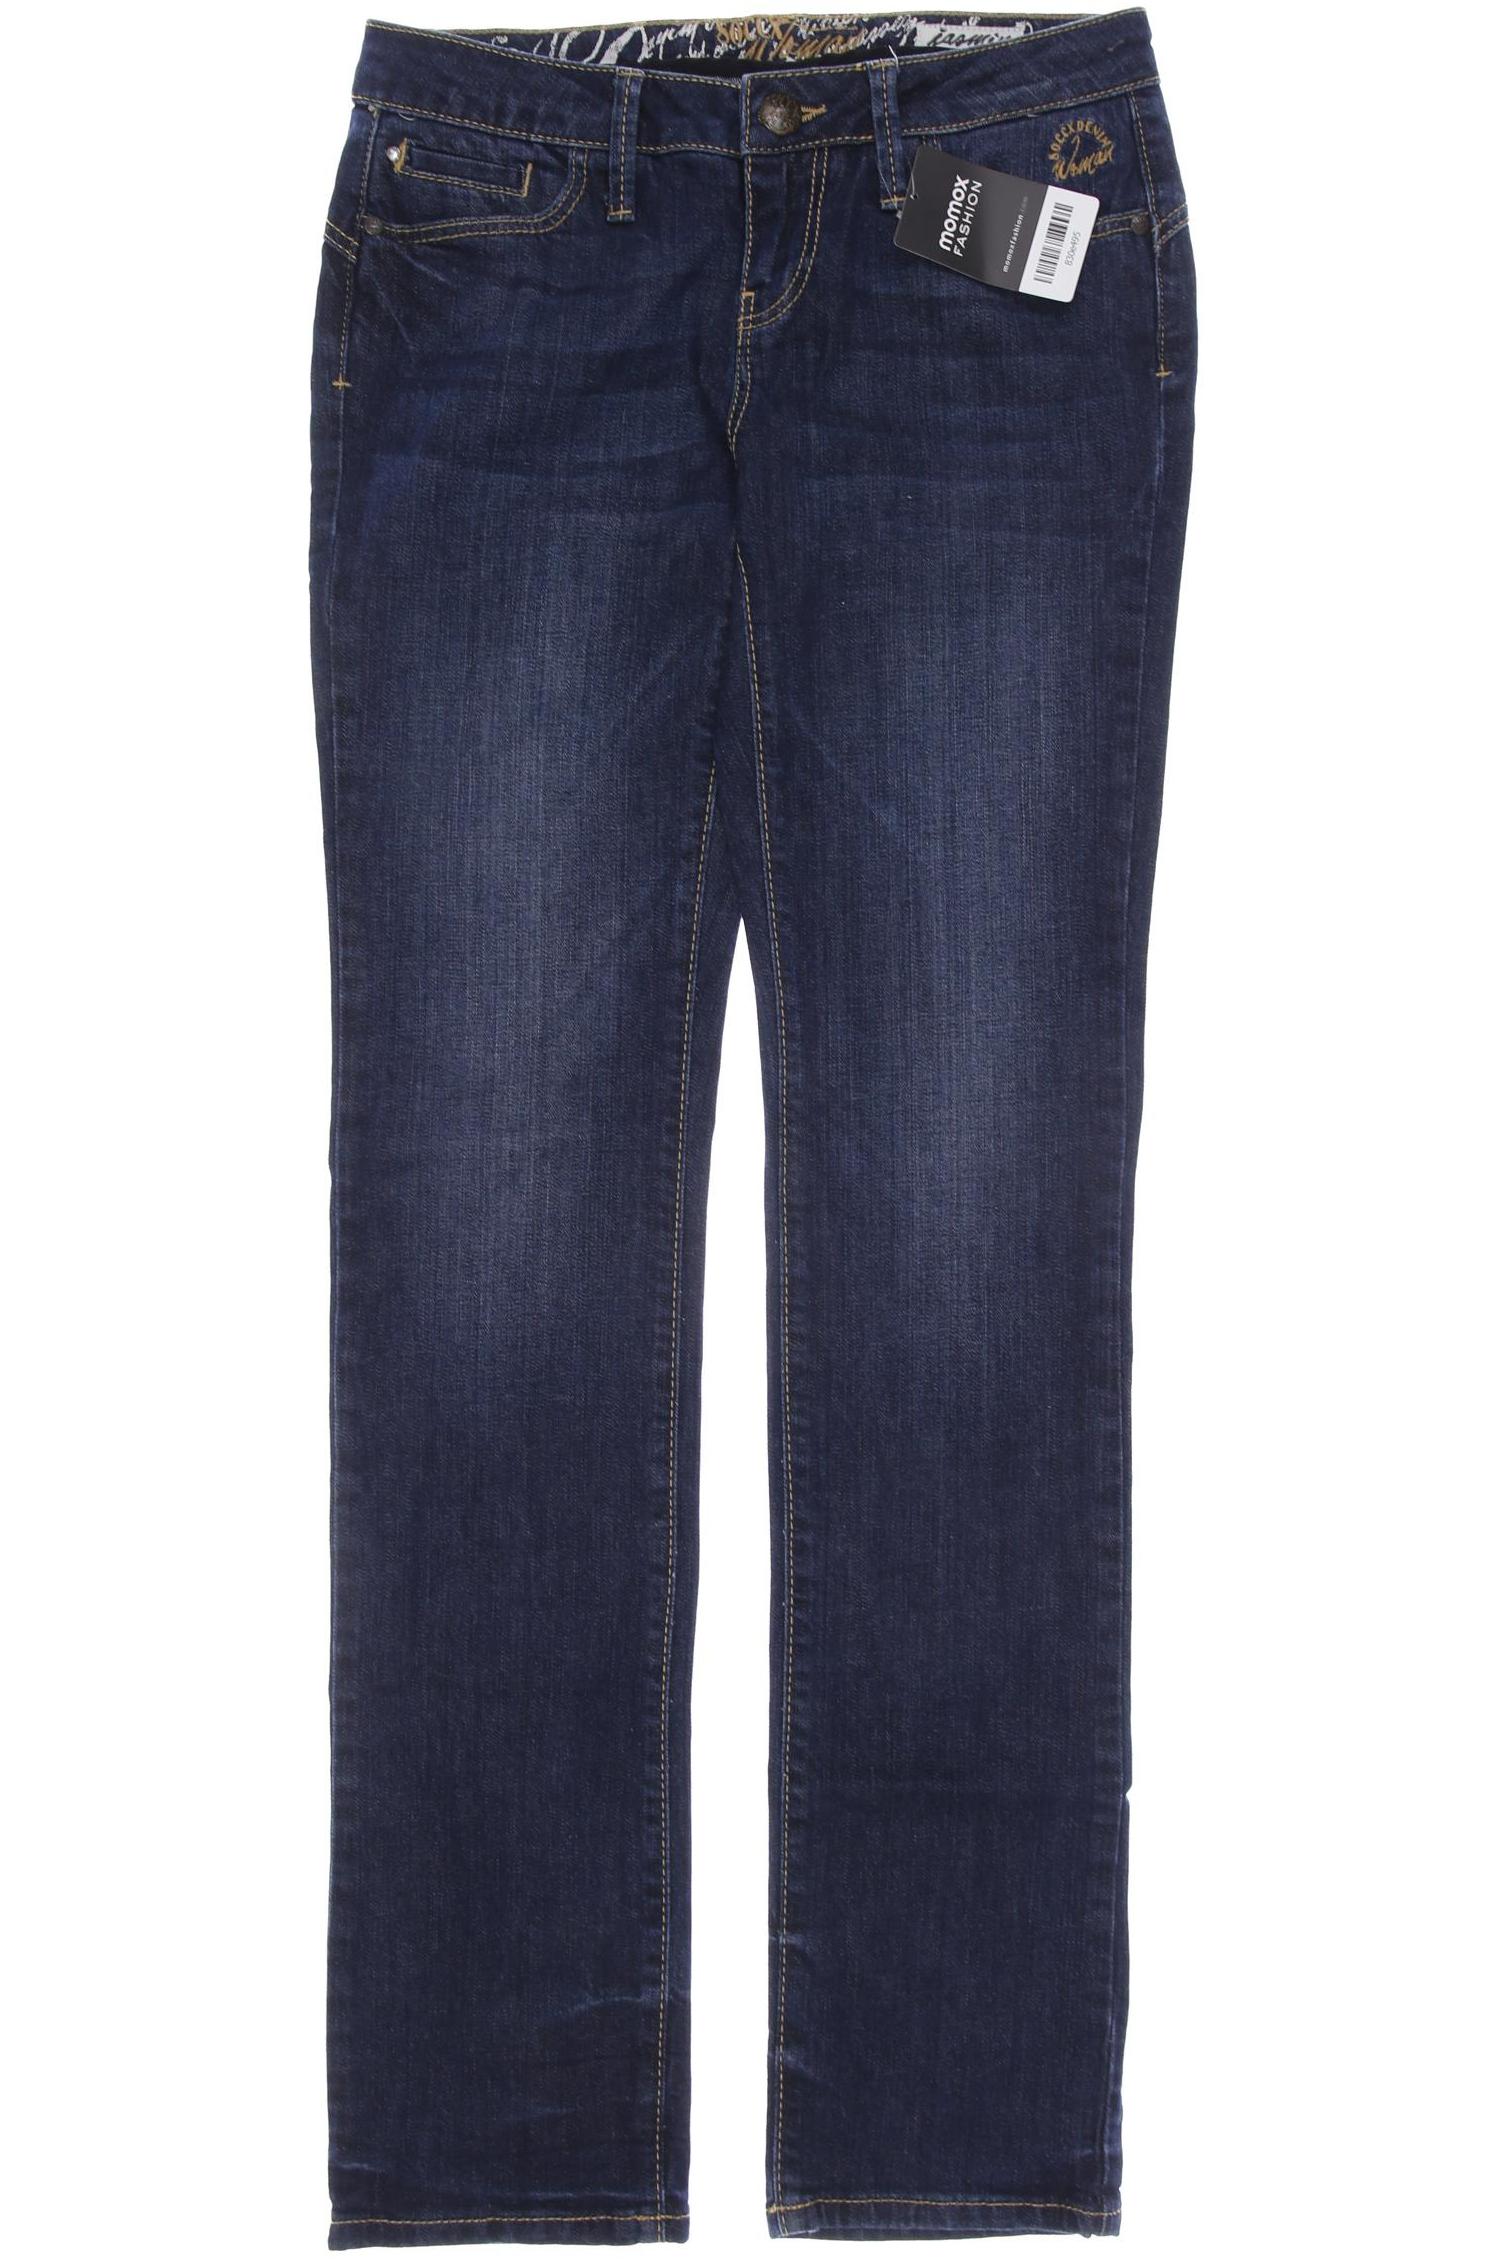 Soccx Damen Jeans, marineblau, Gr. 34 von SOCCX